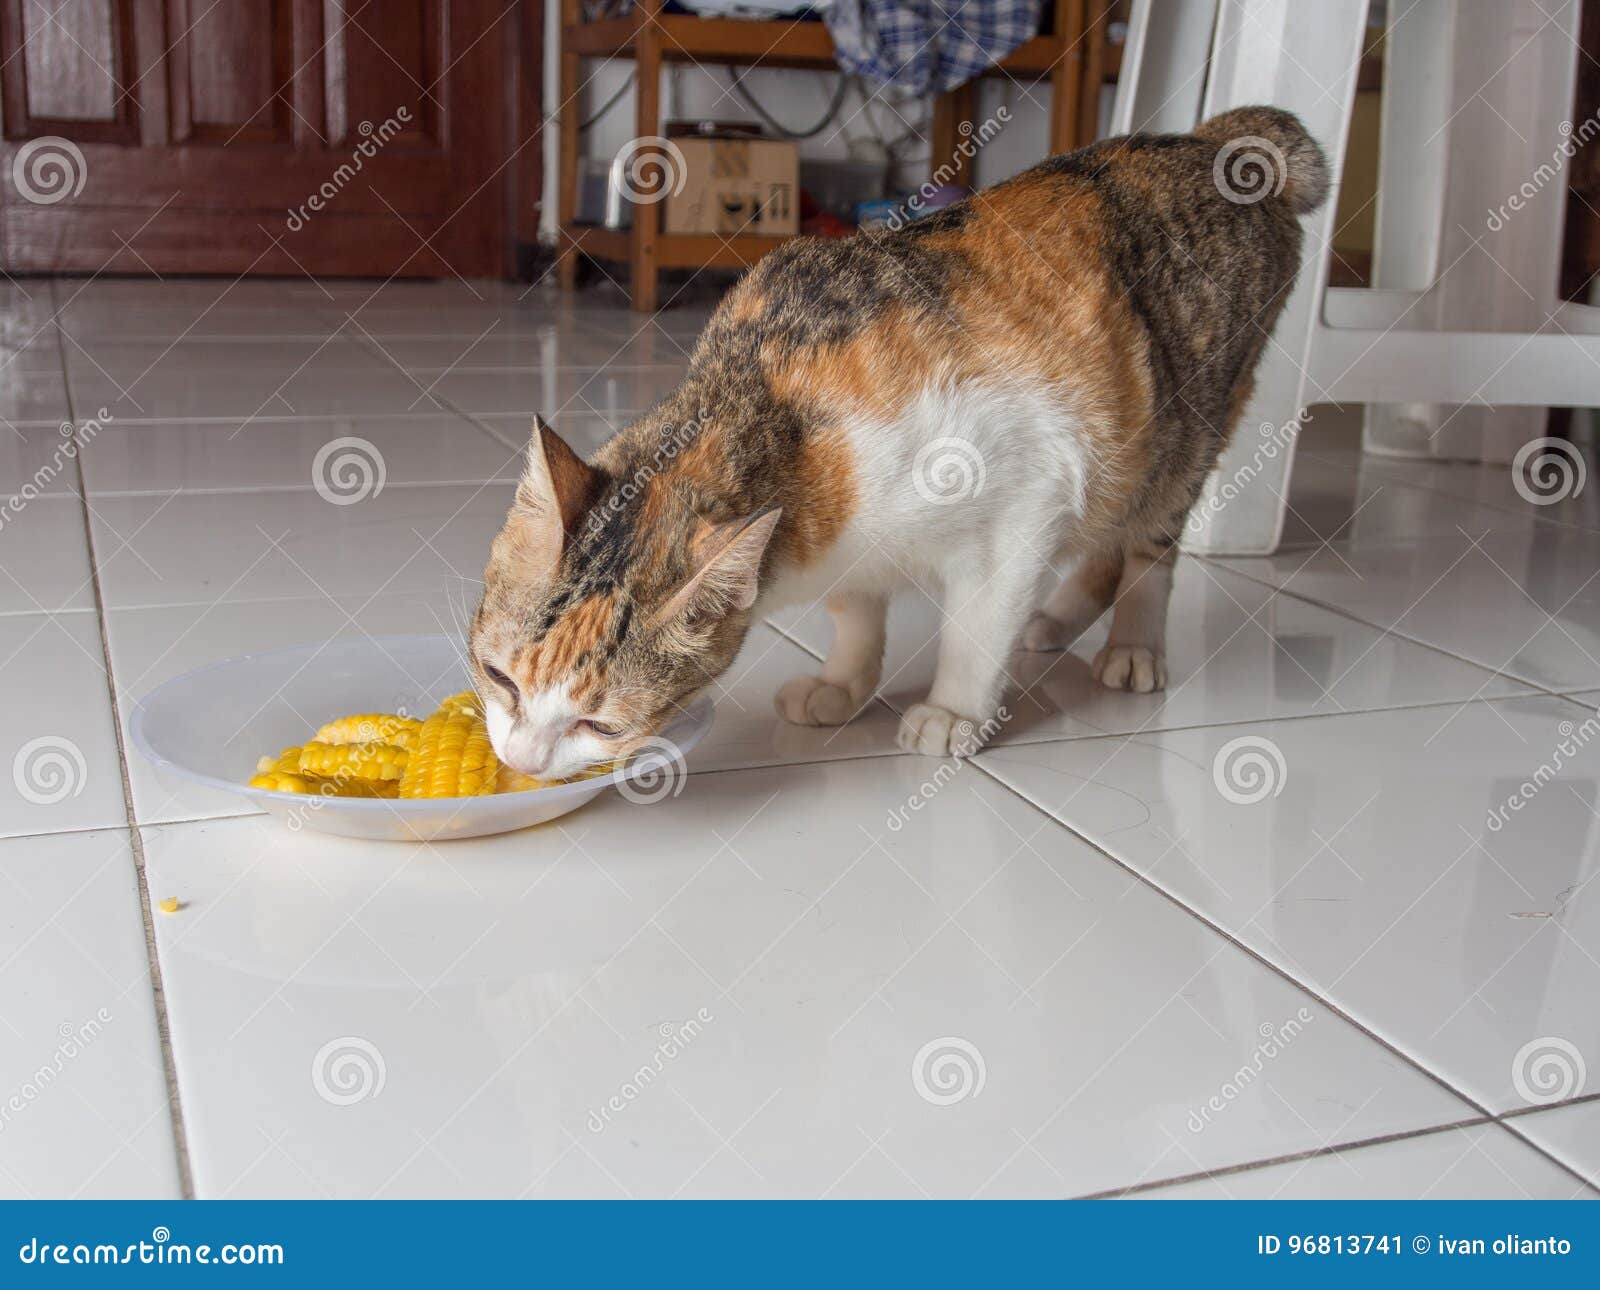 Можно котам кукурузу. Кот ест кукурузу. Коты едят кукурузу фото. Кот ест кукурузу фото. Кошка ест кукурузу консервированную.